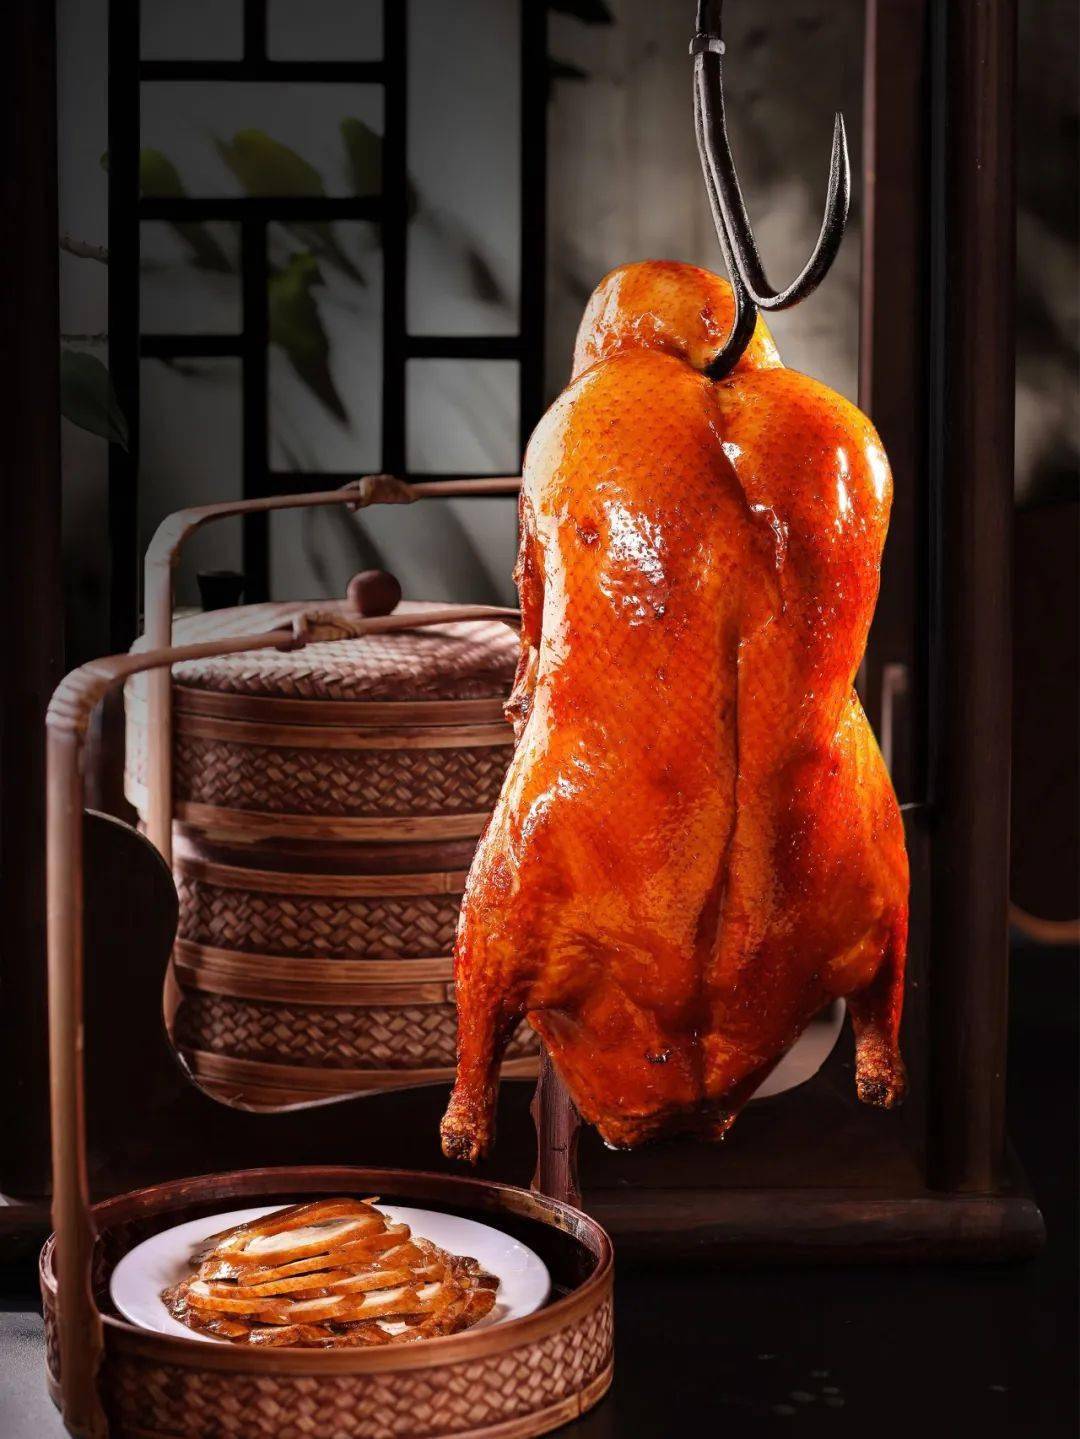 油亮酥脆,肉质细嫩采用用宫廷的"挂炉烤鸭"北京鸭有着千年的历史禧